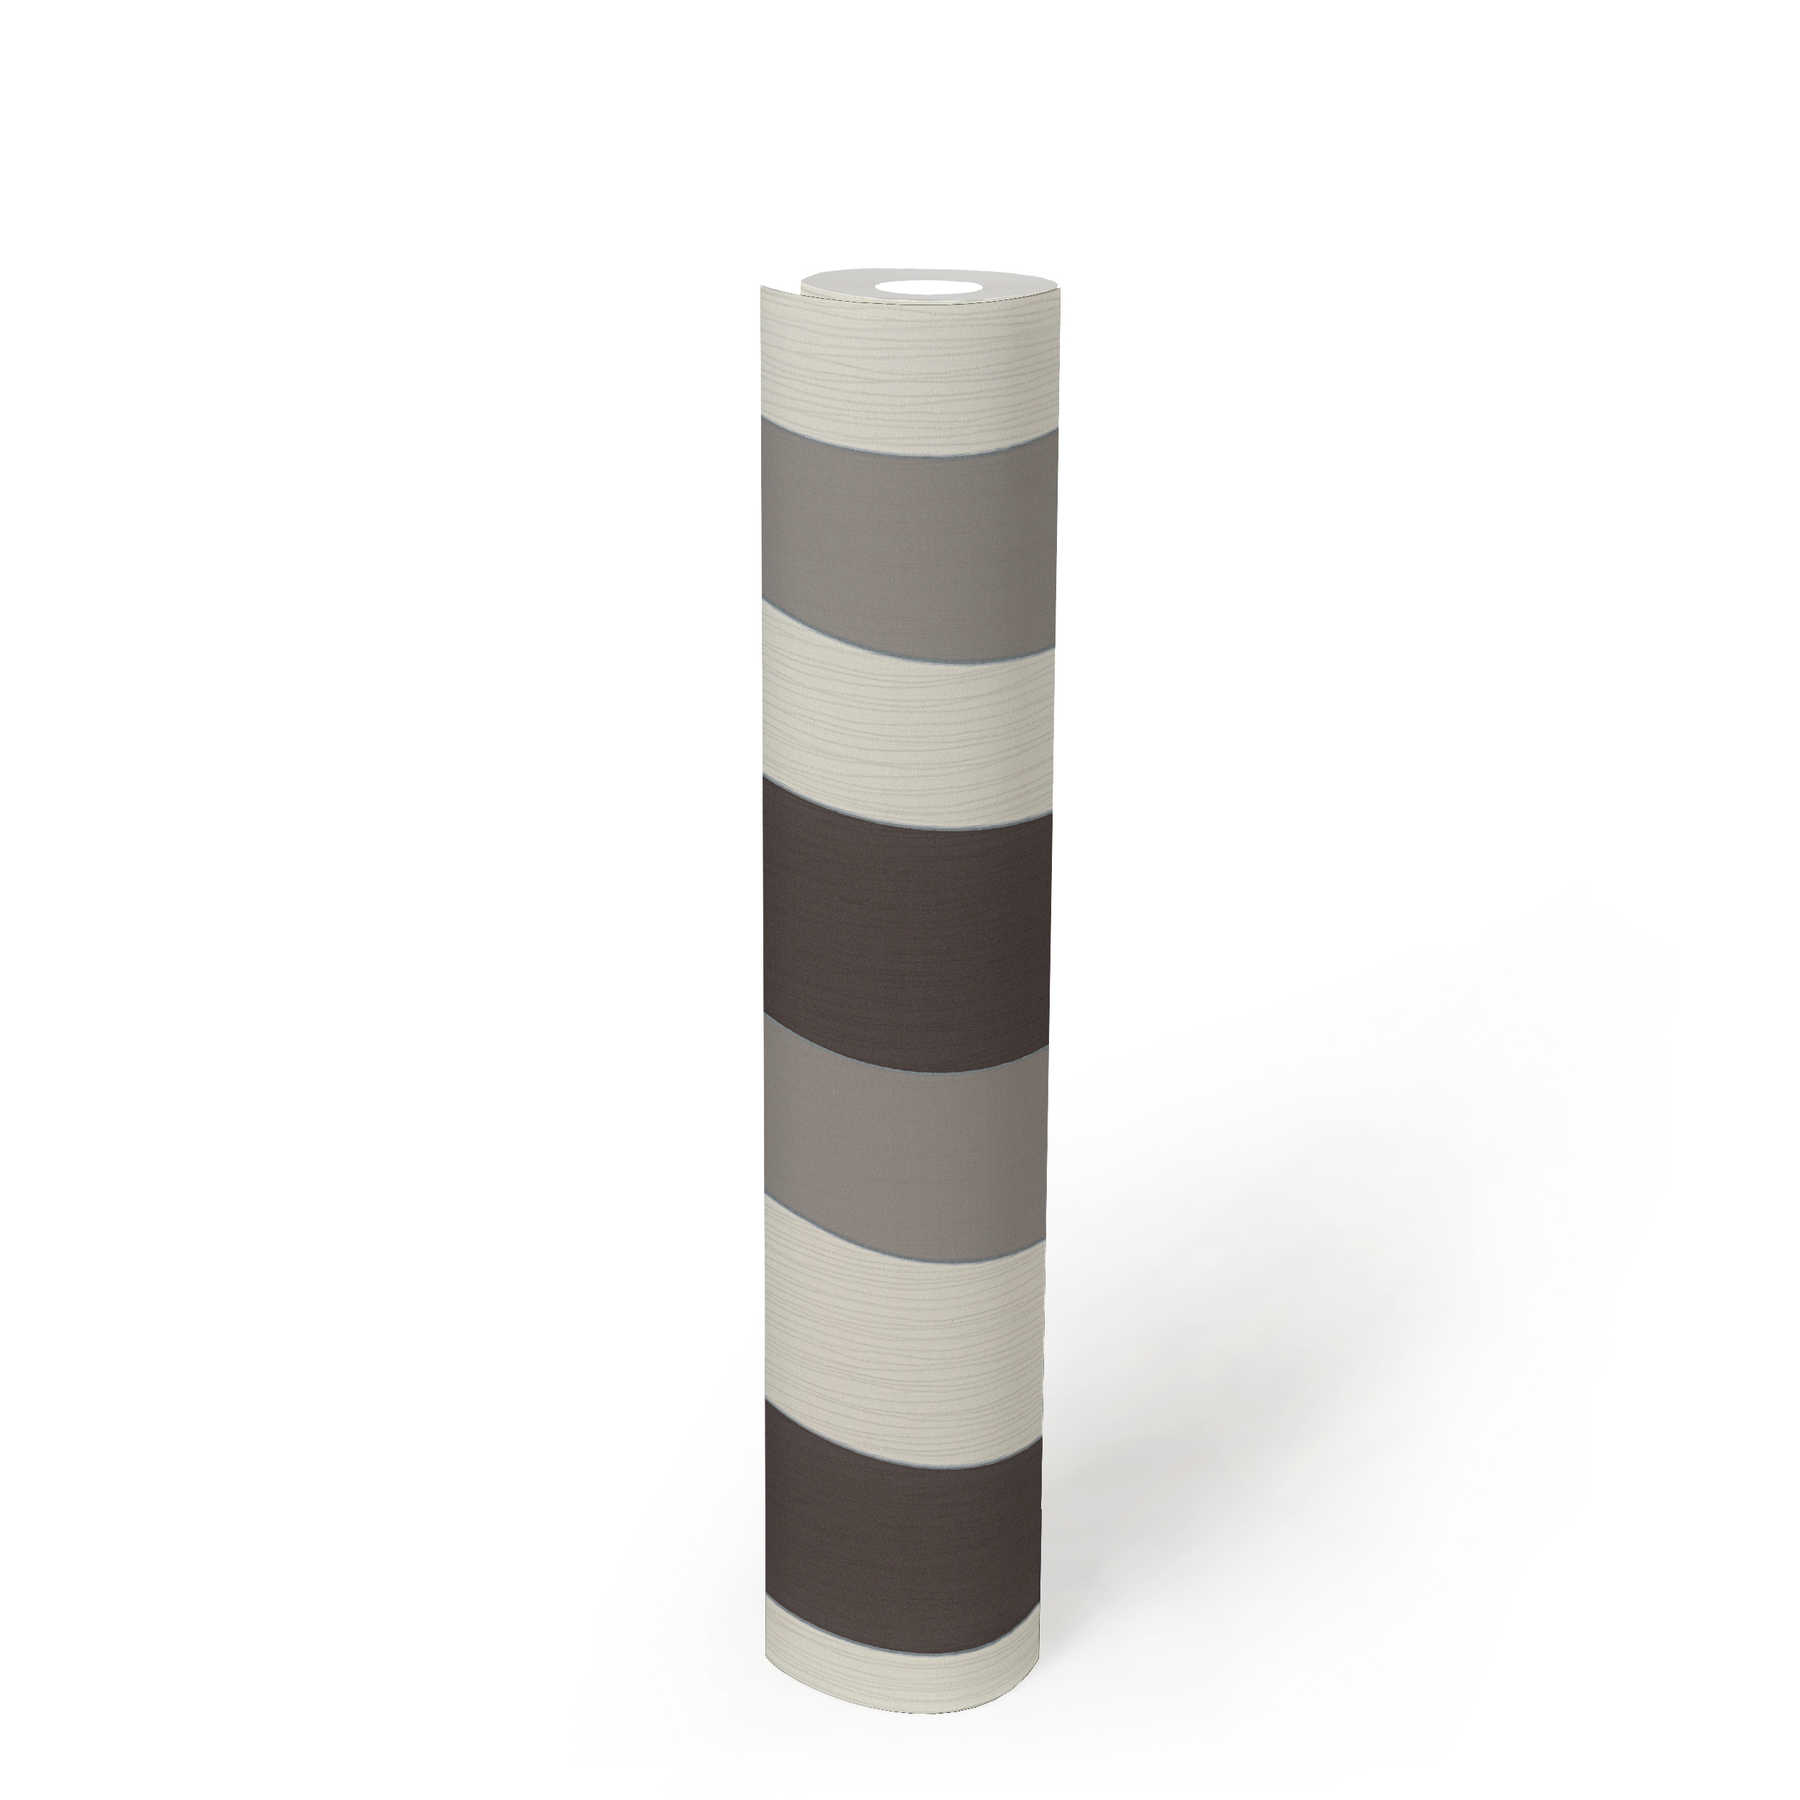             Tapete Linien Design mit Metallic-Effekt – Creme, Grau
        